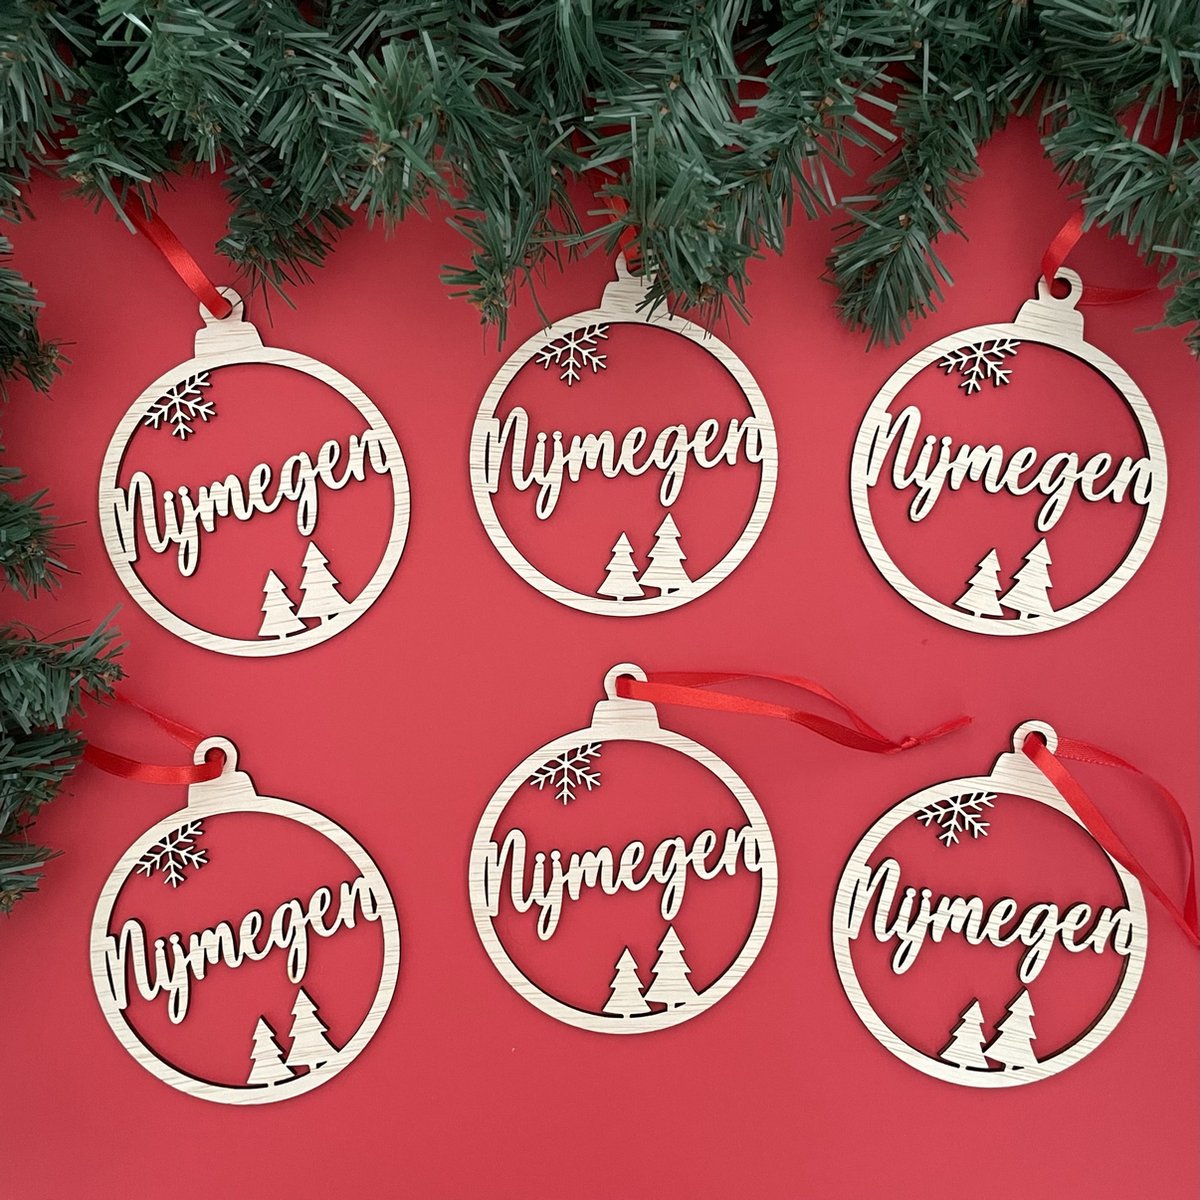 Houten Kersthangers Set Nijmegen 6 Stuks - Kerst - Kerstbal - Hout - Kerstboom - Houten Decoratie - Kerstmis - Kerstdecoratie - Kerst ornament – Versiering